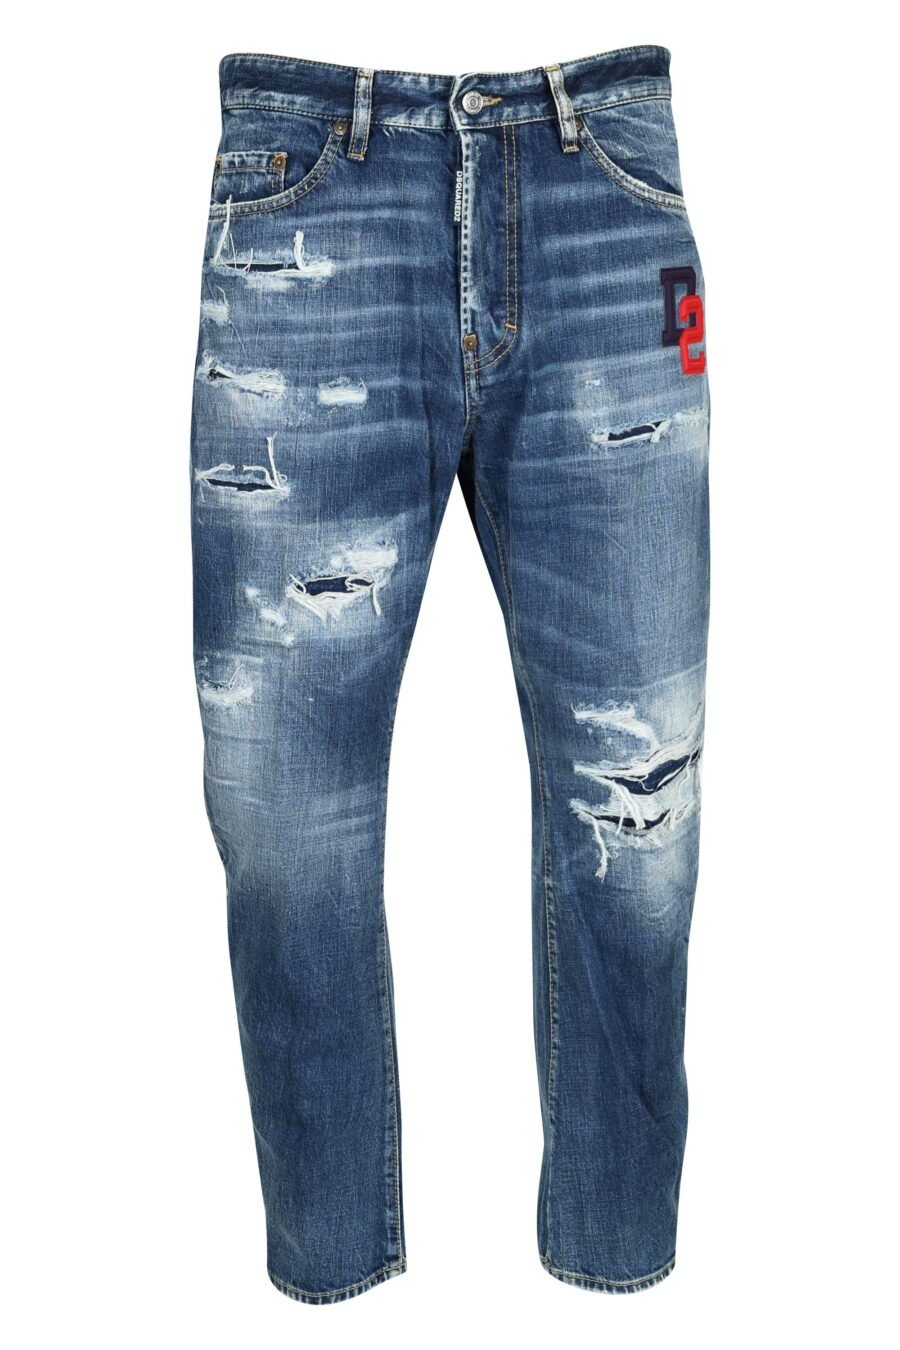 Pantalón vaquero azul "bro jeans" con logo "d2" - 8054148338572